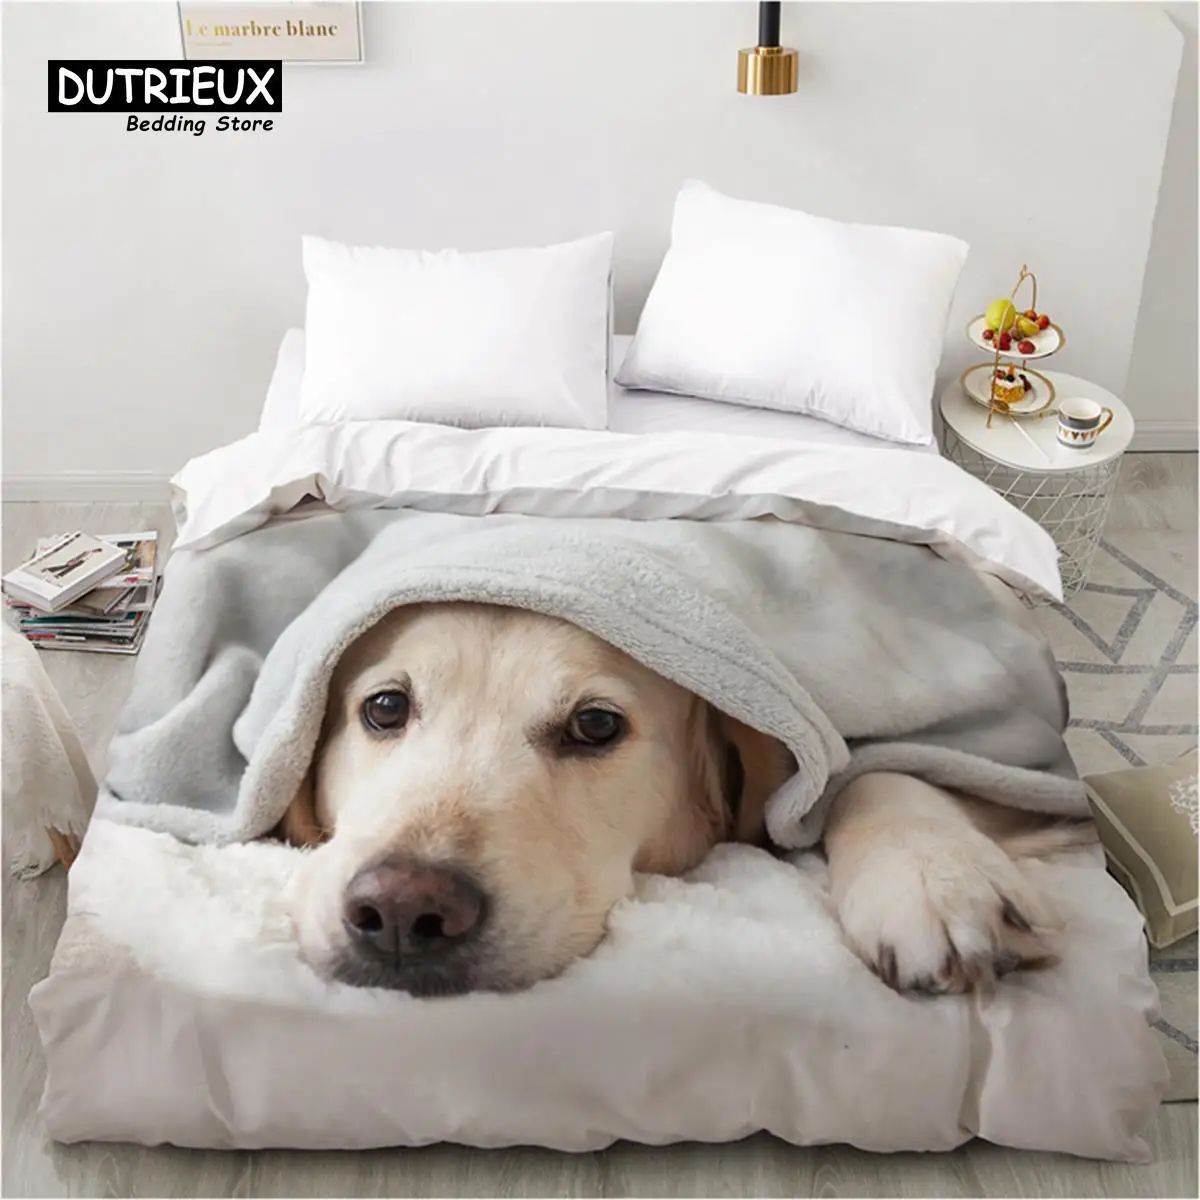 

Cute Dogs Duvet Cover Animal Bedding Set Luxury 3D Cartoon Dog Comforter Cover Full King For Kids Boys Girls Teens Bedroom Decor